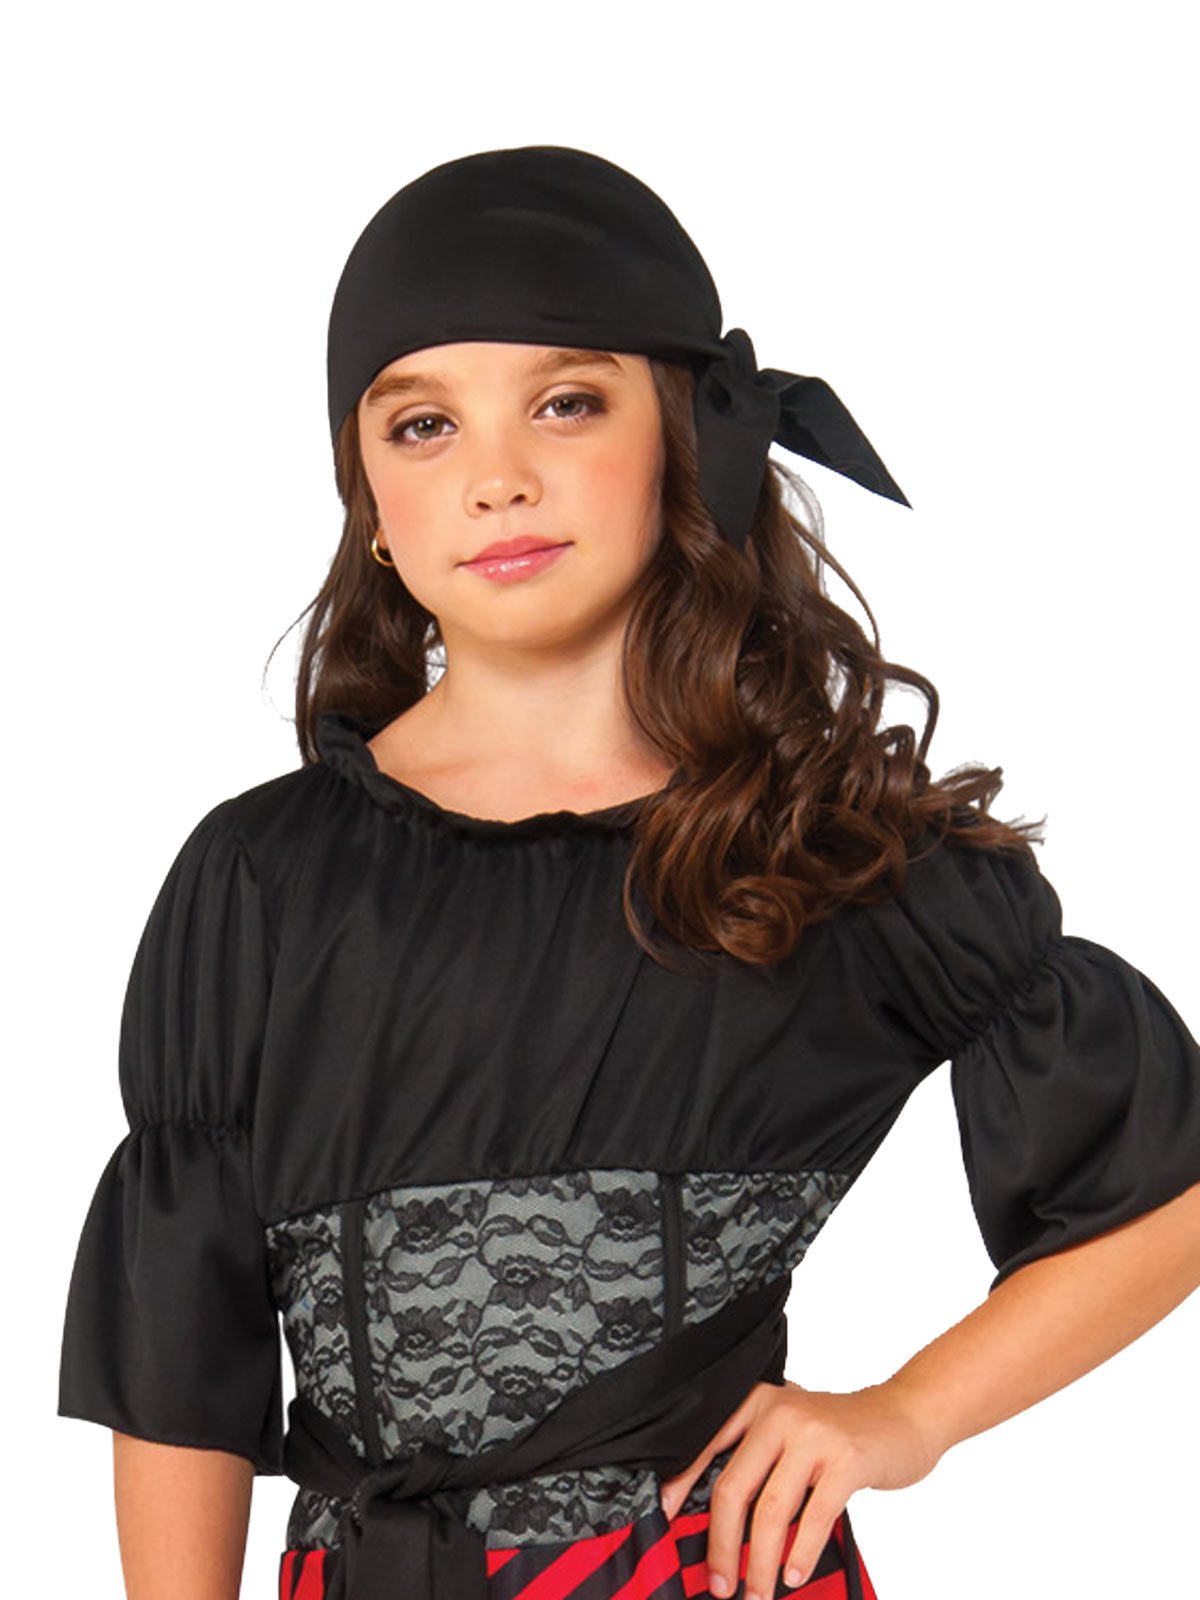 Costume Child Pirate Medium 6-8 Years